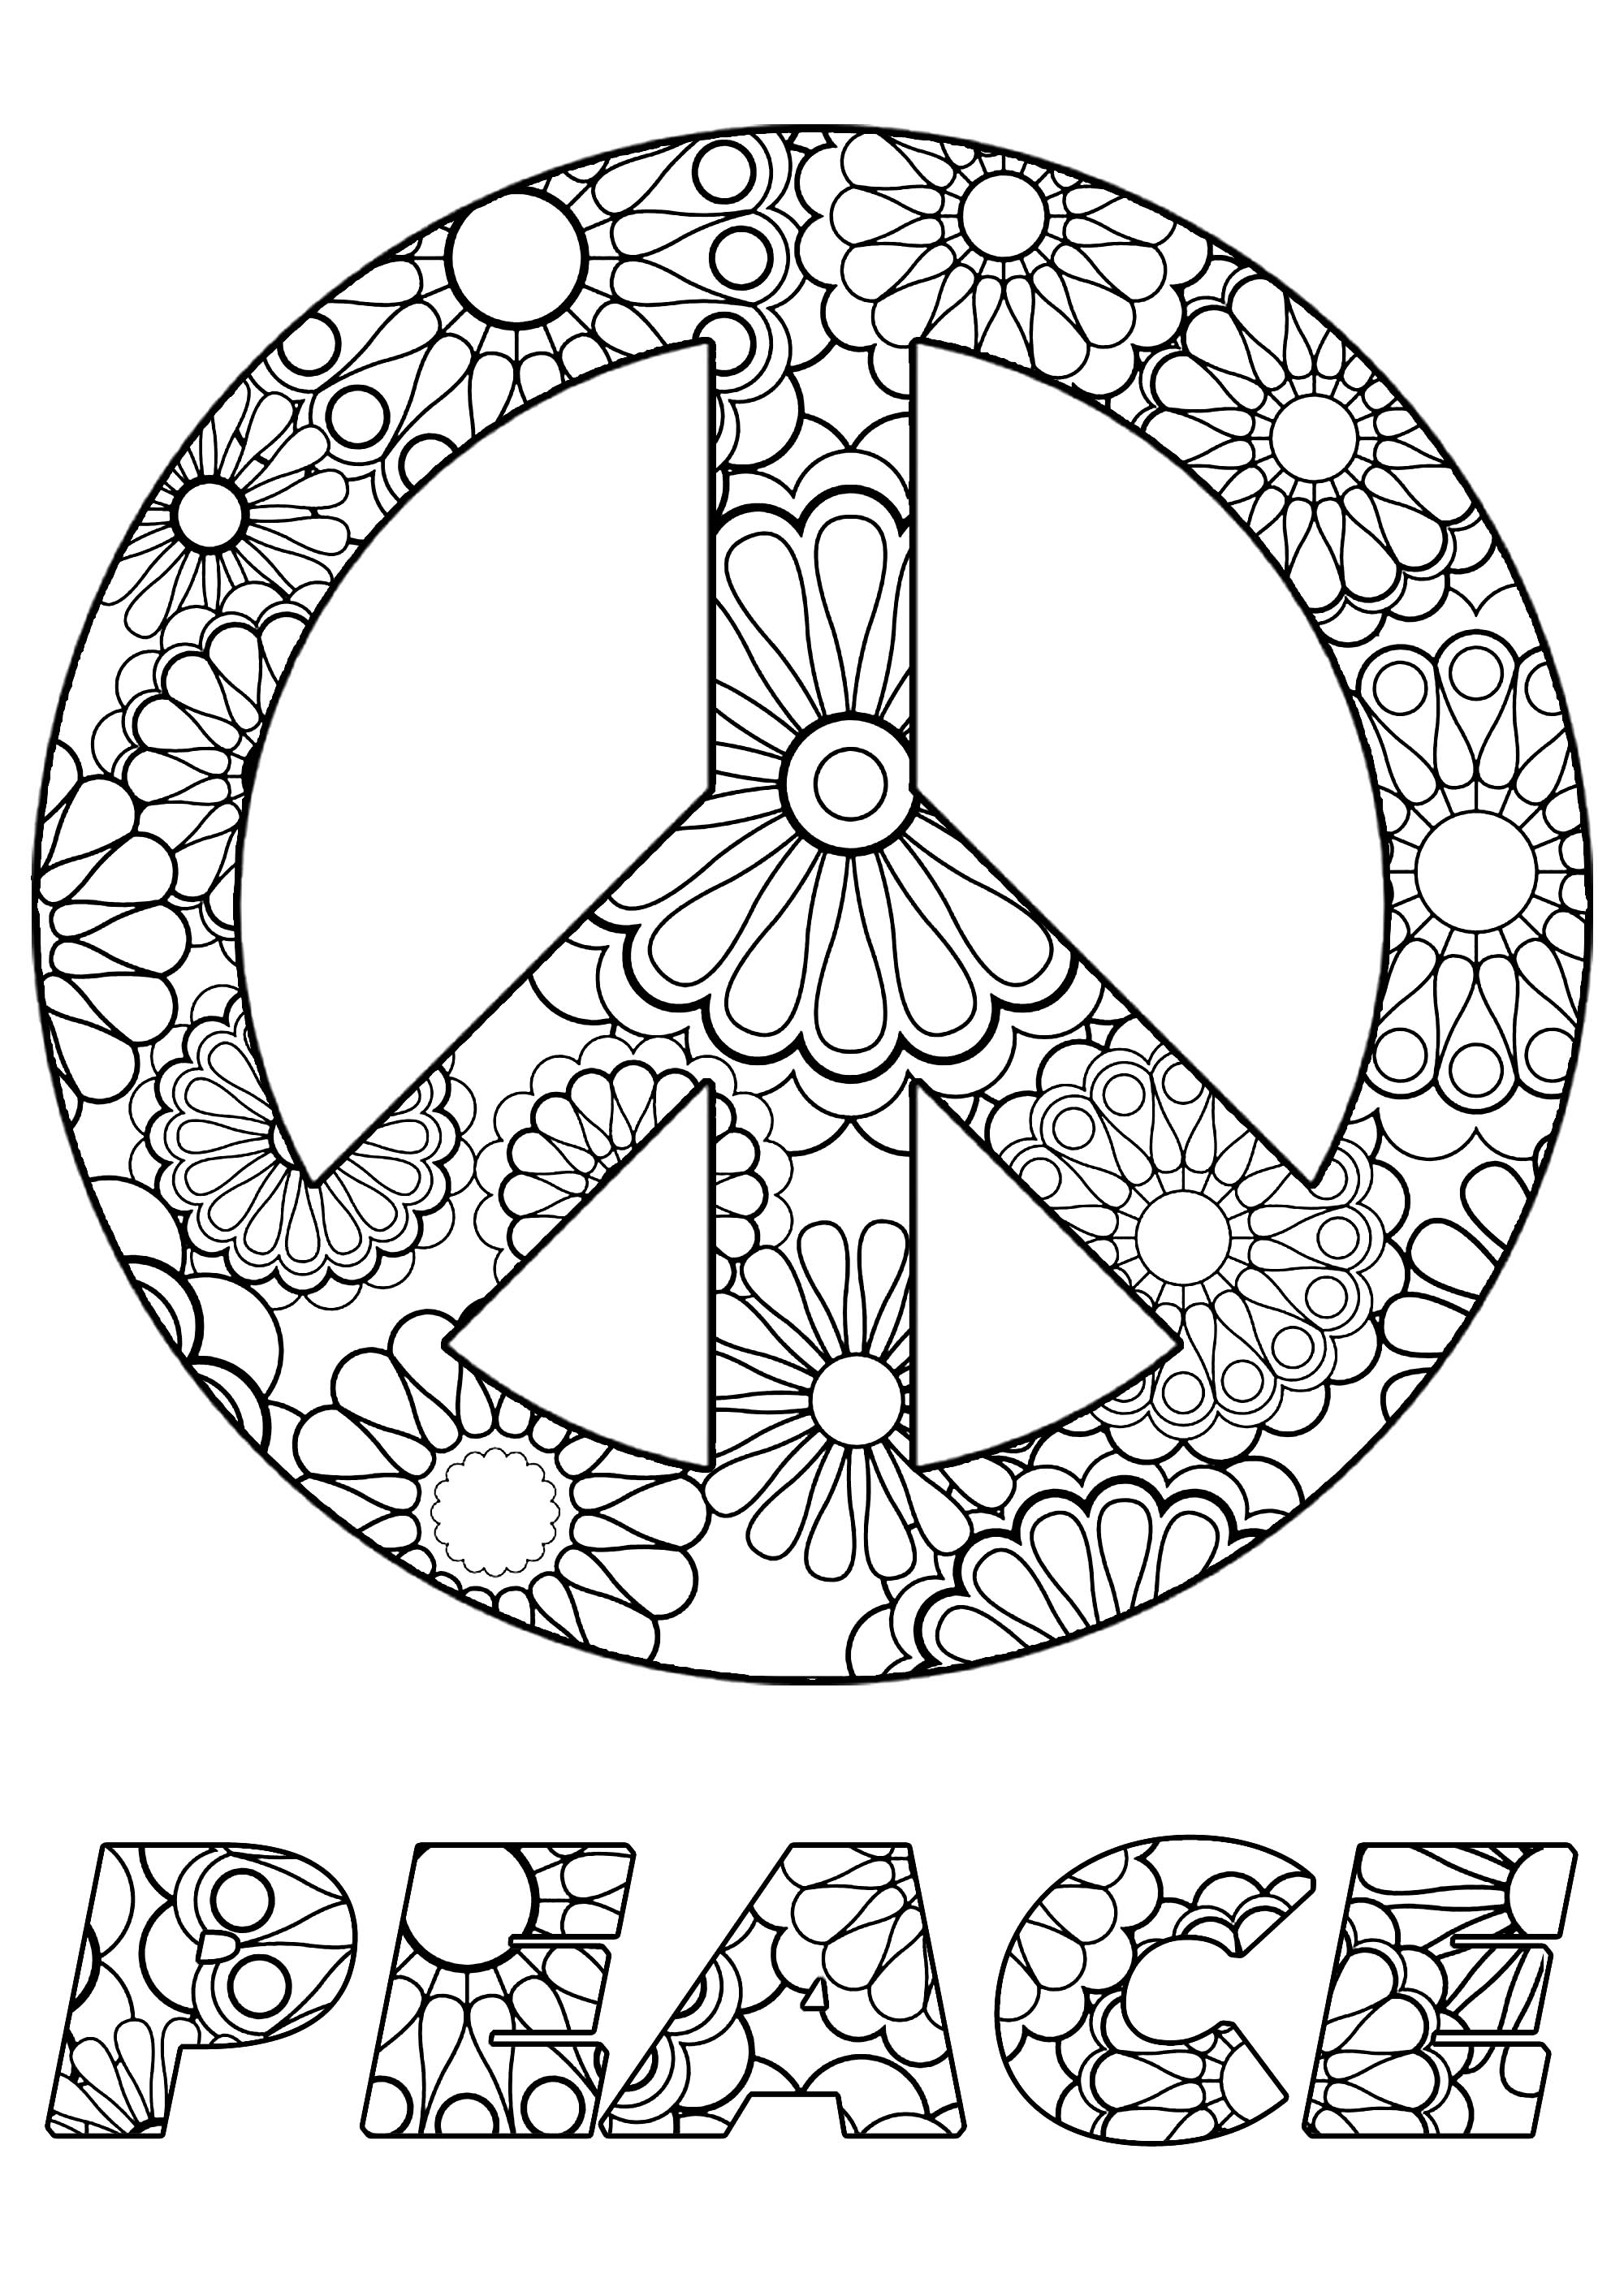 Färben Sie das Friedenssymbol und den Text mit den schönen Blumen im Inneren